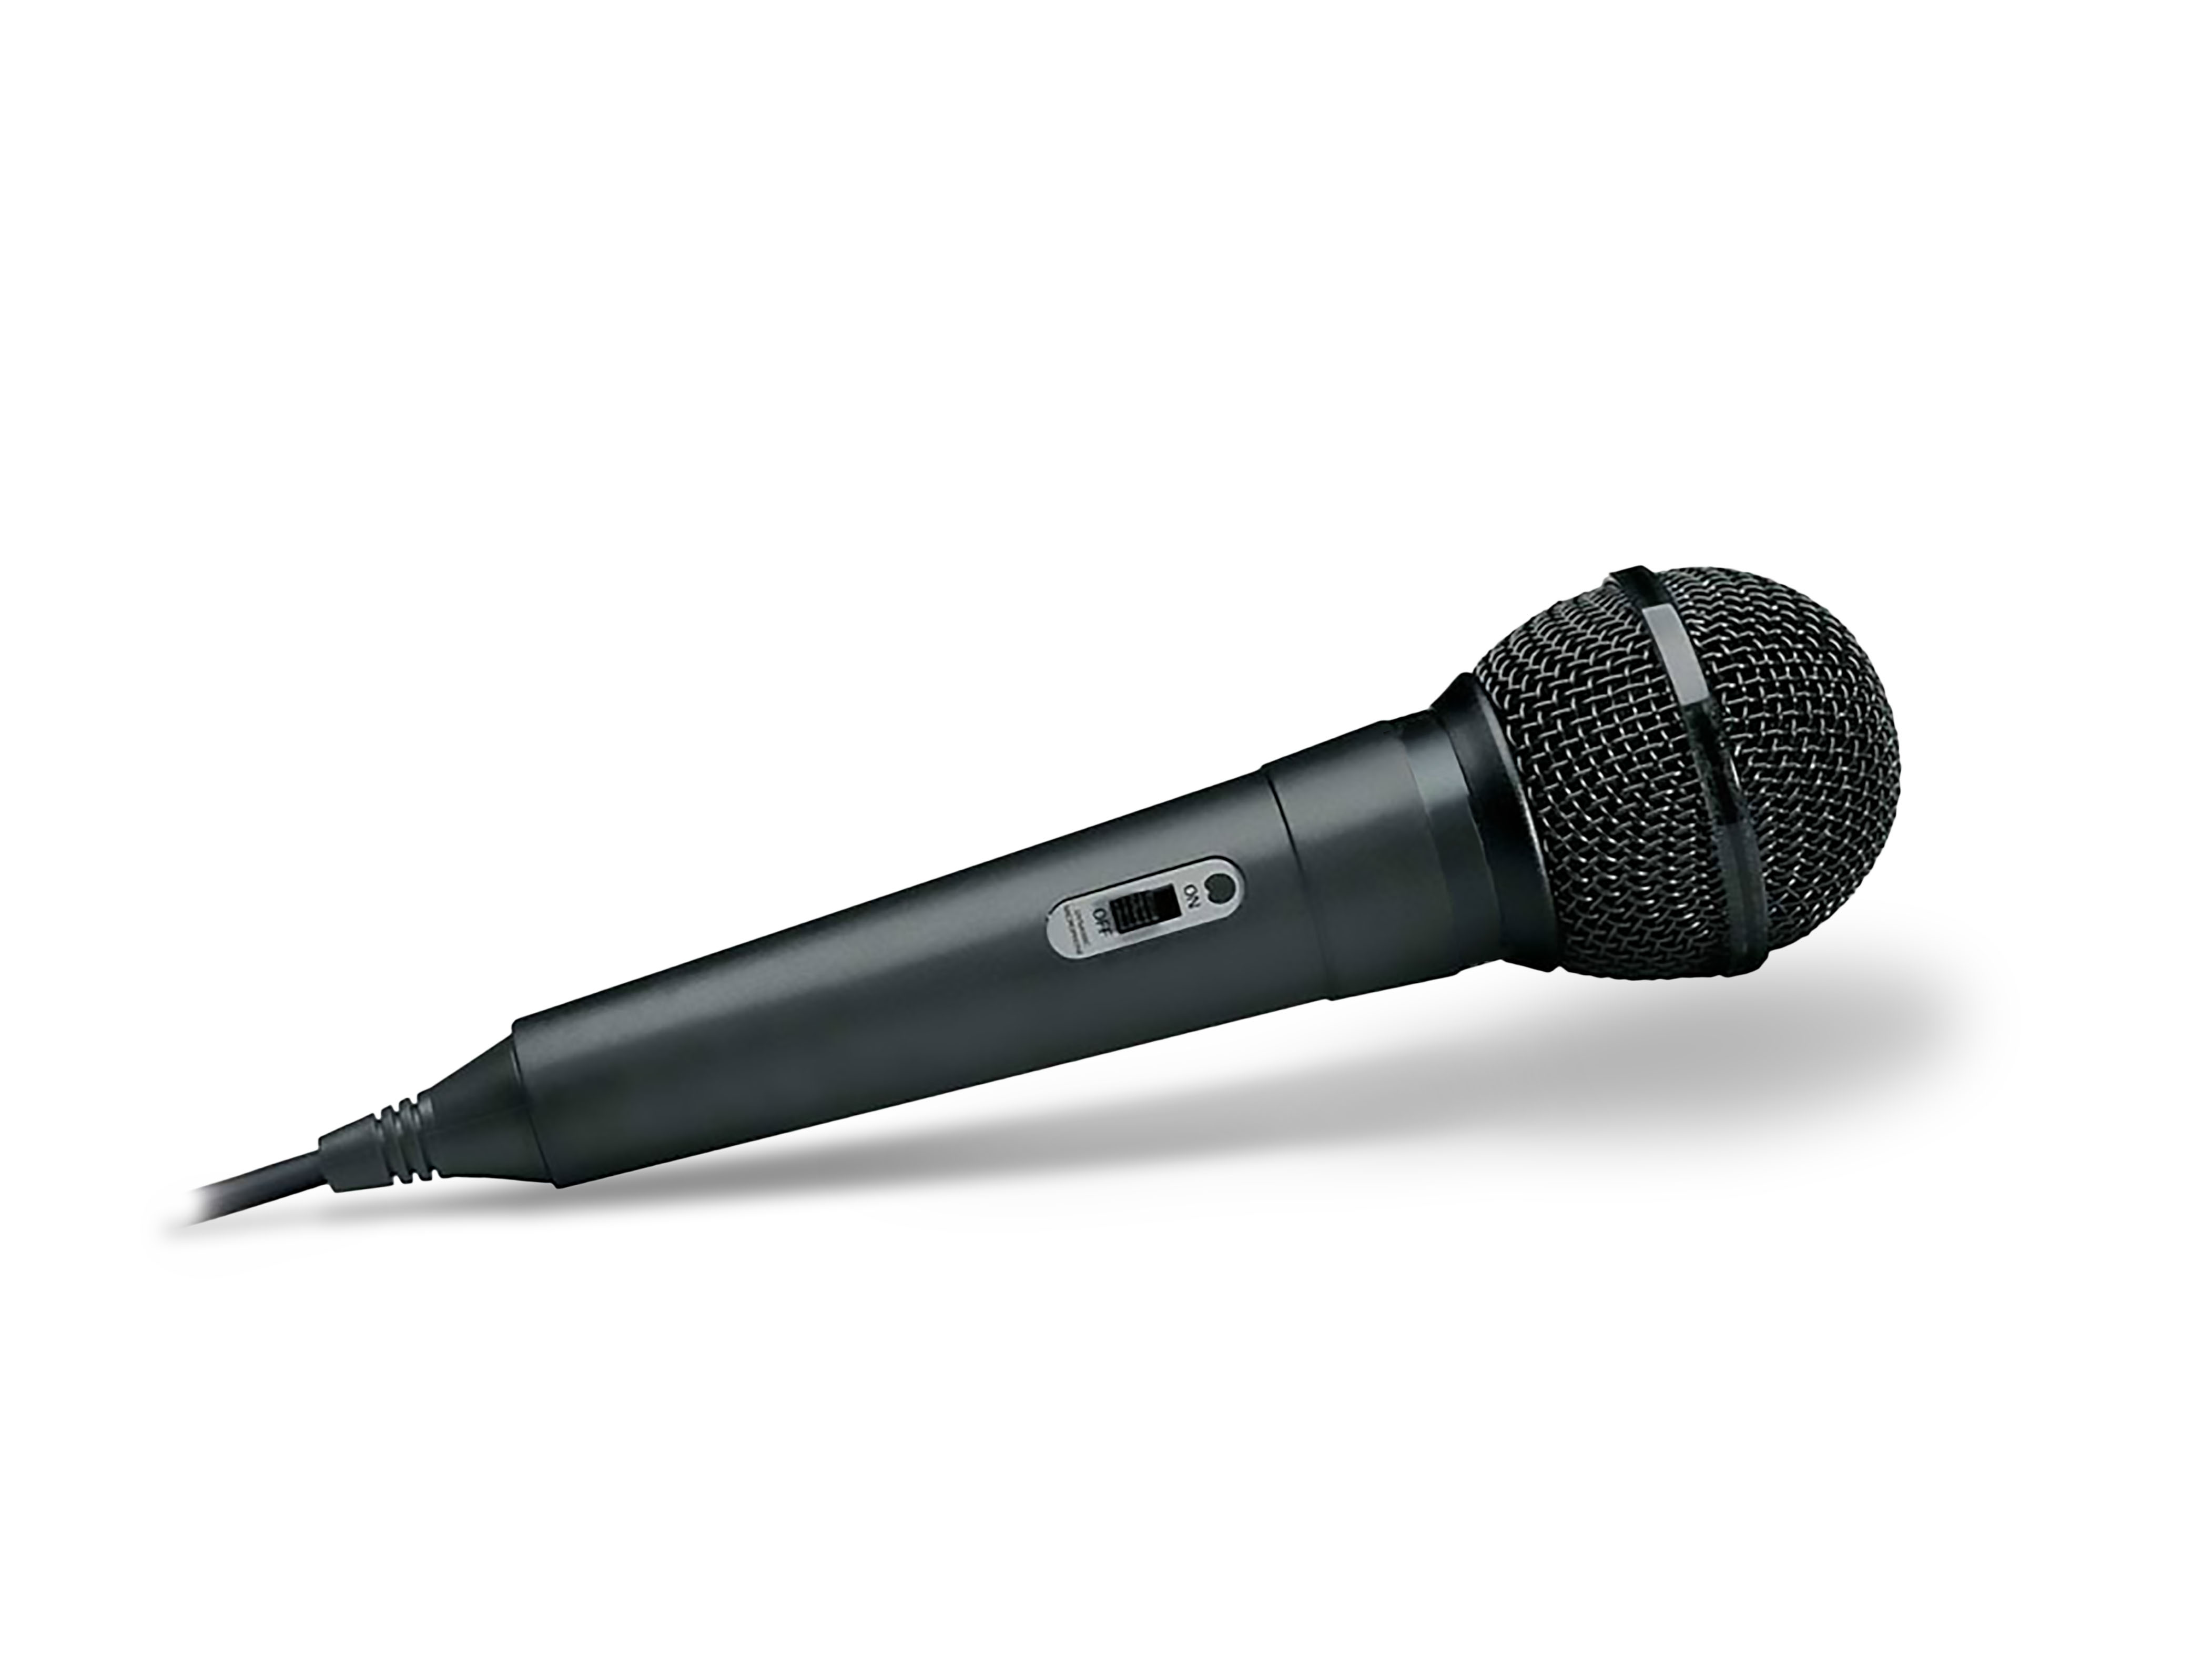 Bluetooth -Lautsprecher, Schwarz CALIBER HPA502BTL Karaoke